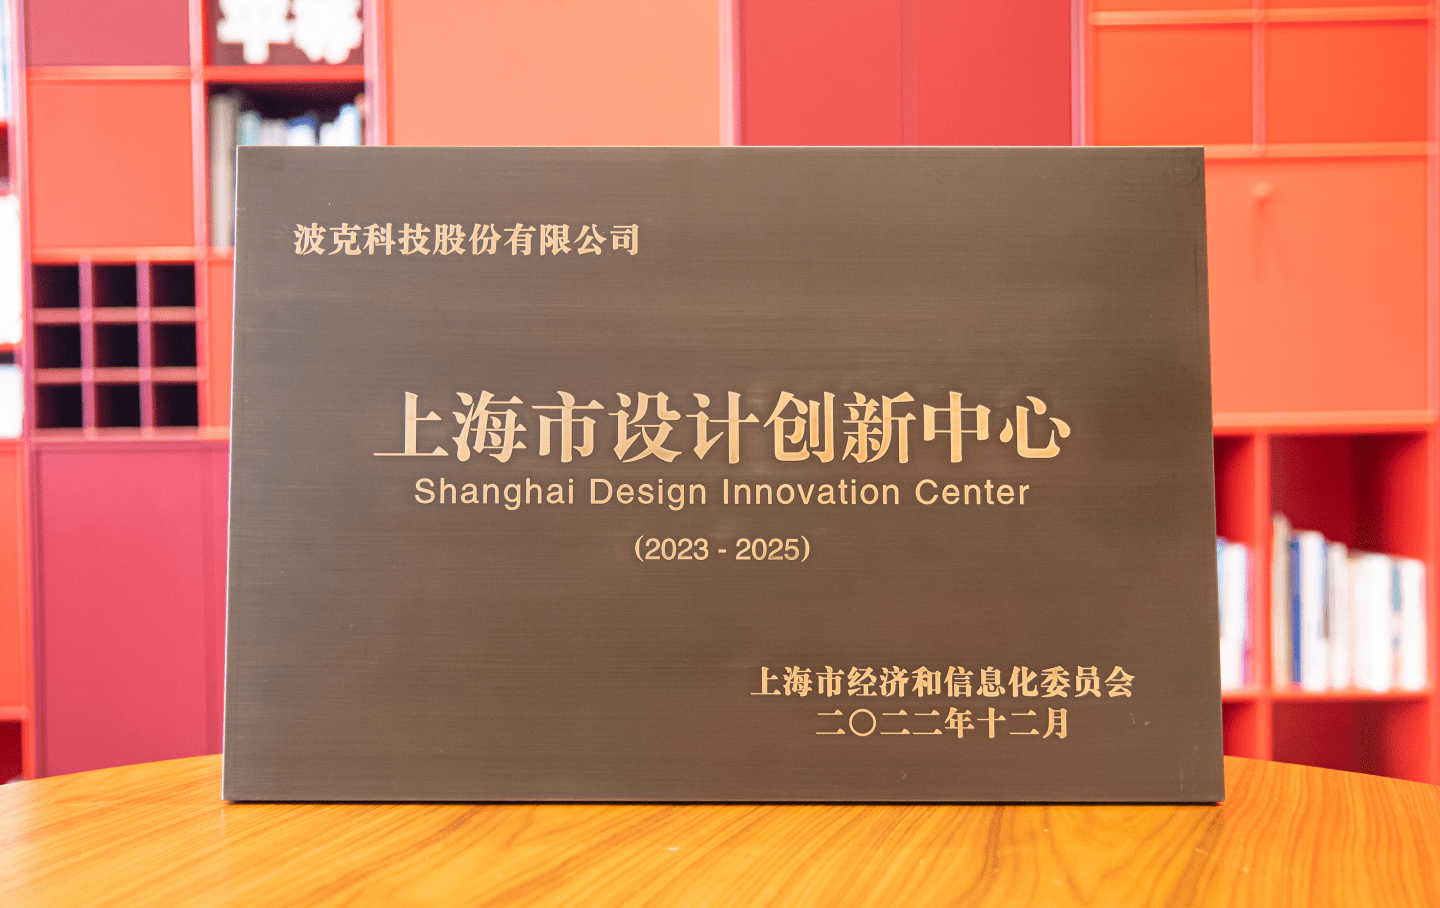 猫咪公寓2苹果版
:波克城市获评“上海市设计创新中心”称号